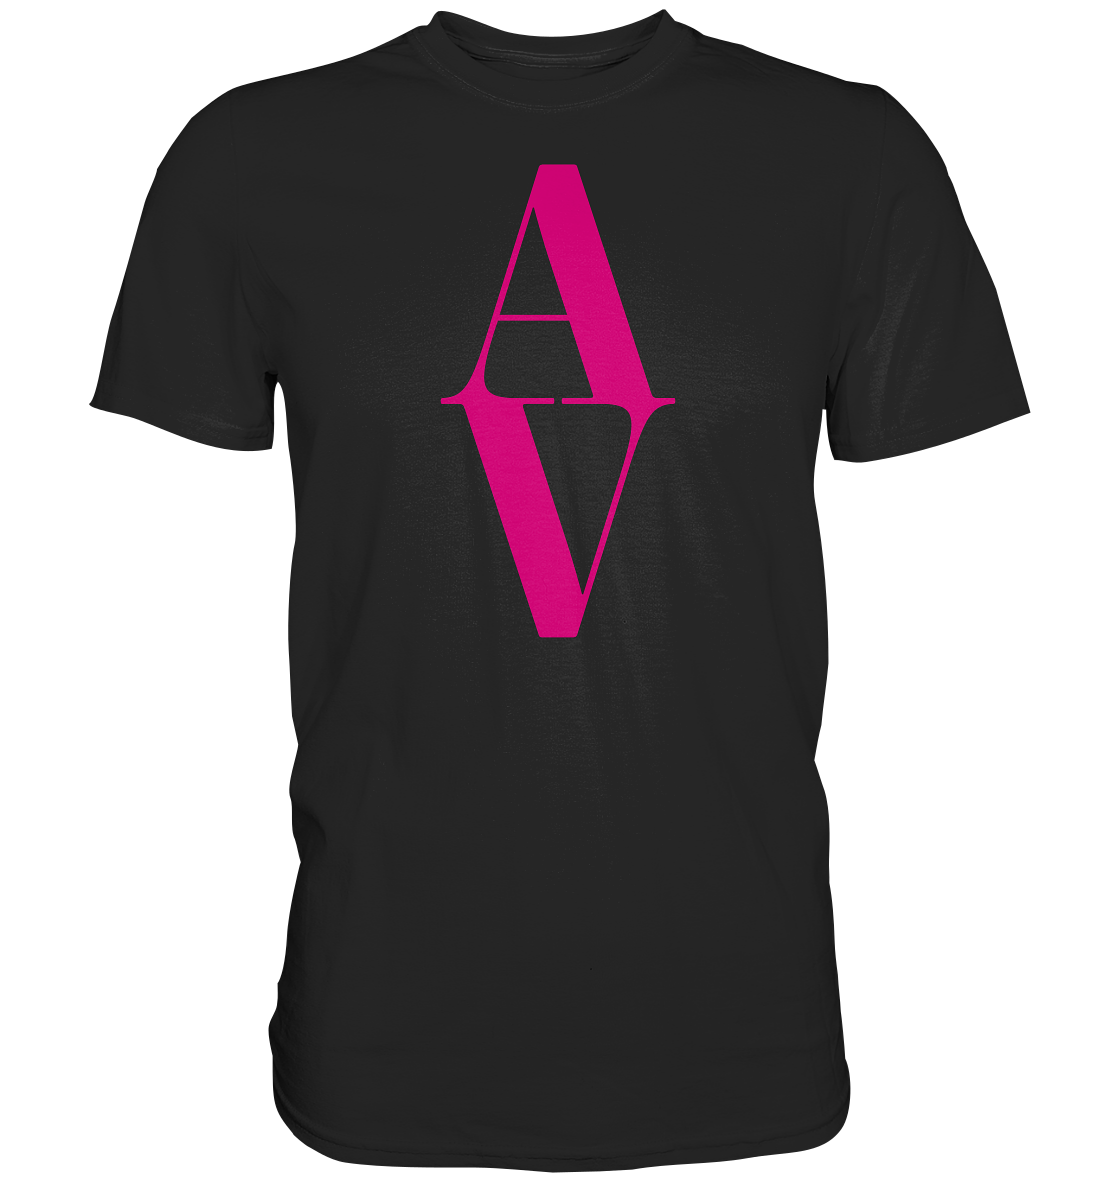 AV / Premium Unisex Tshirt with Pink AV Logo